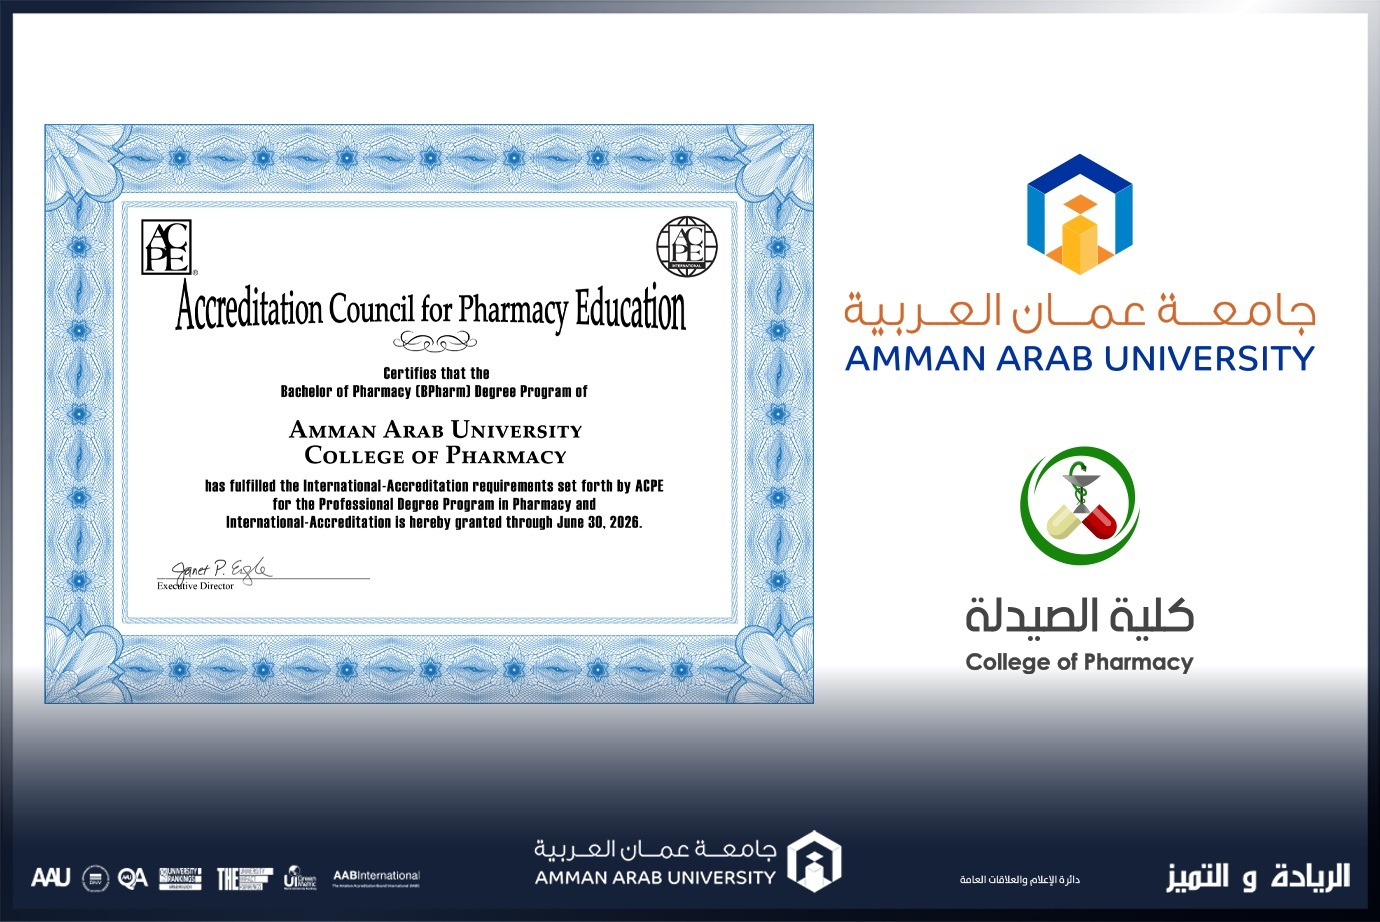 كلية الصيدلة في "عمان العربية" تحصل على شهادة الاعتماد الأمريكي للتعليم الصيدلاني ACPE